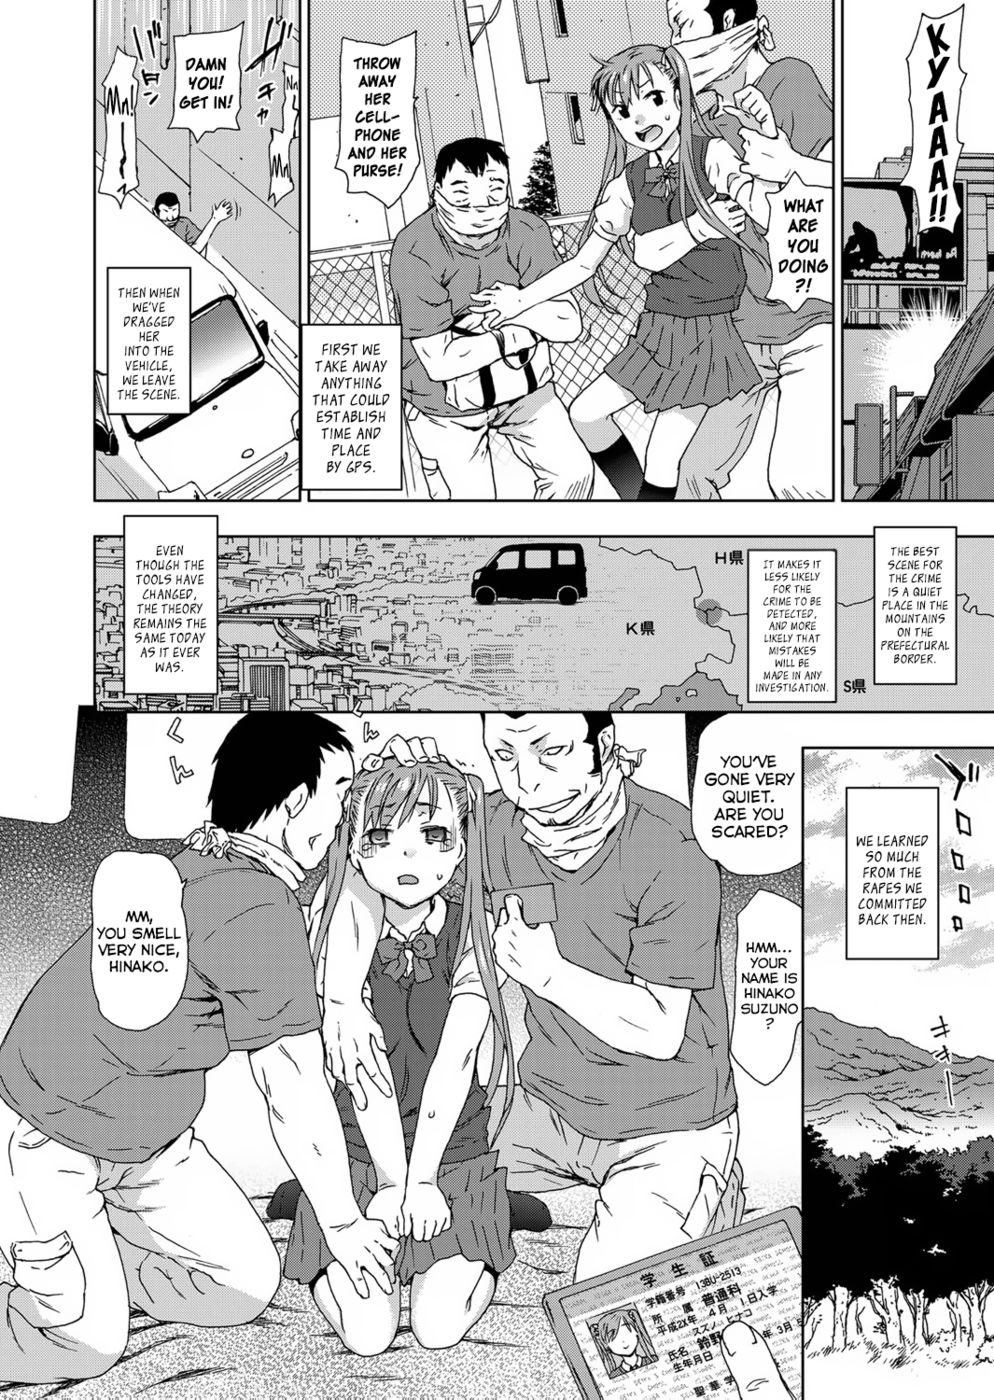 Manga rape comic porn hentai